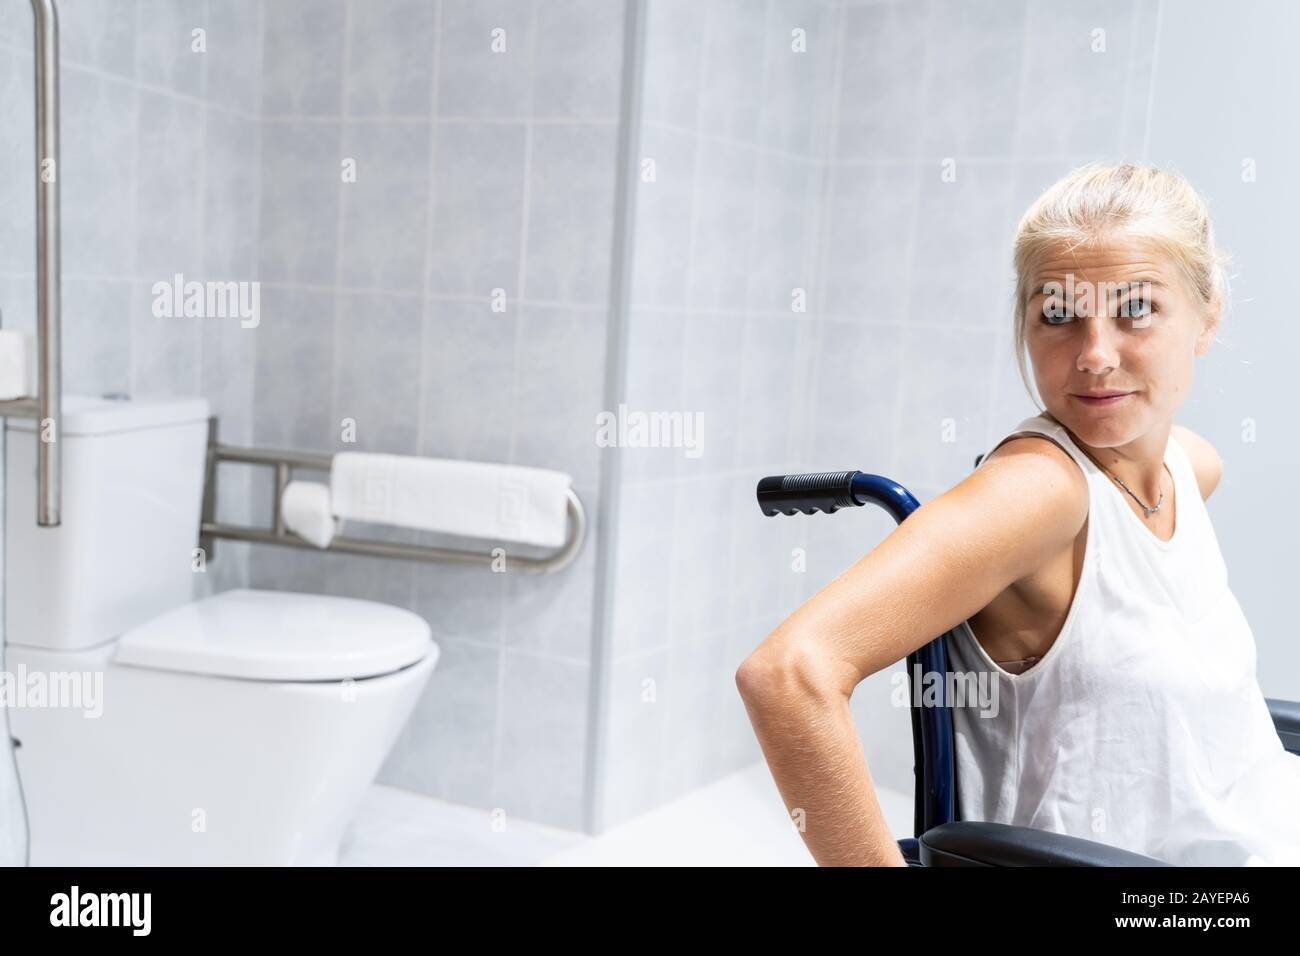 Blondes Mädchen sitzt im Rollstuhl in einem Badezimmer, hinter der toilette,  mit dem Kopf seitlich gedreht Stockfotografie - Alamy